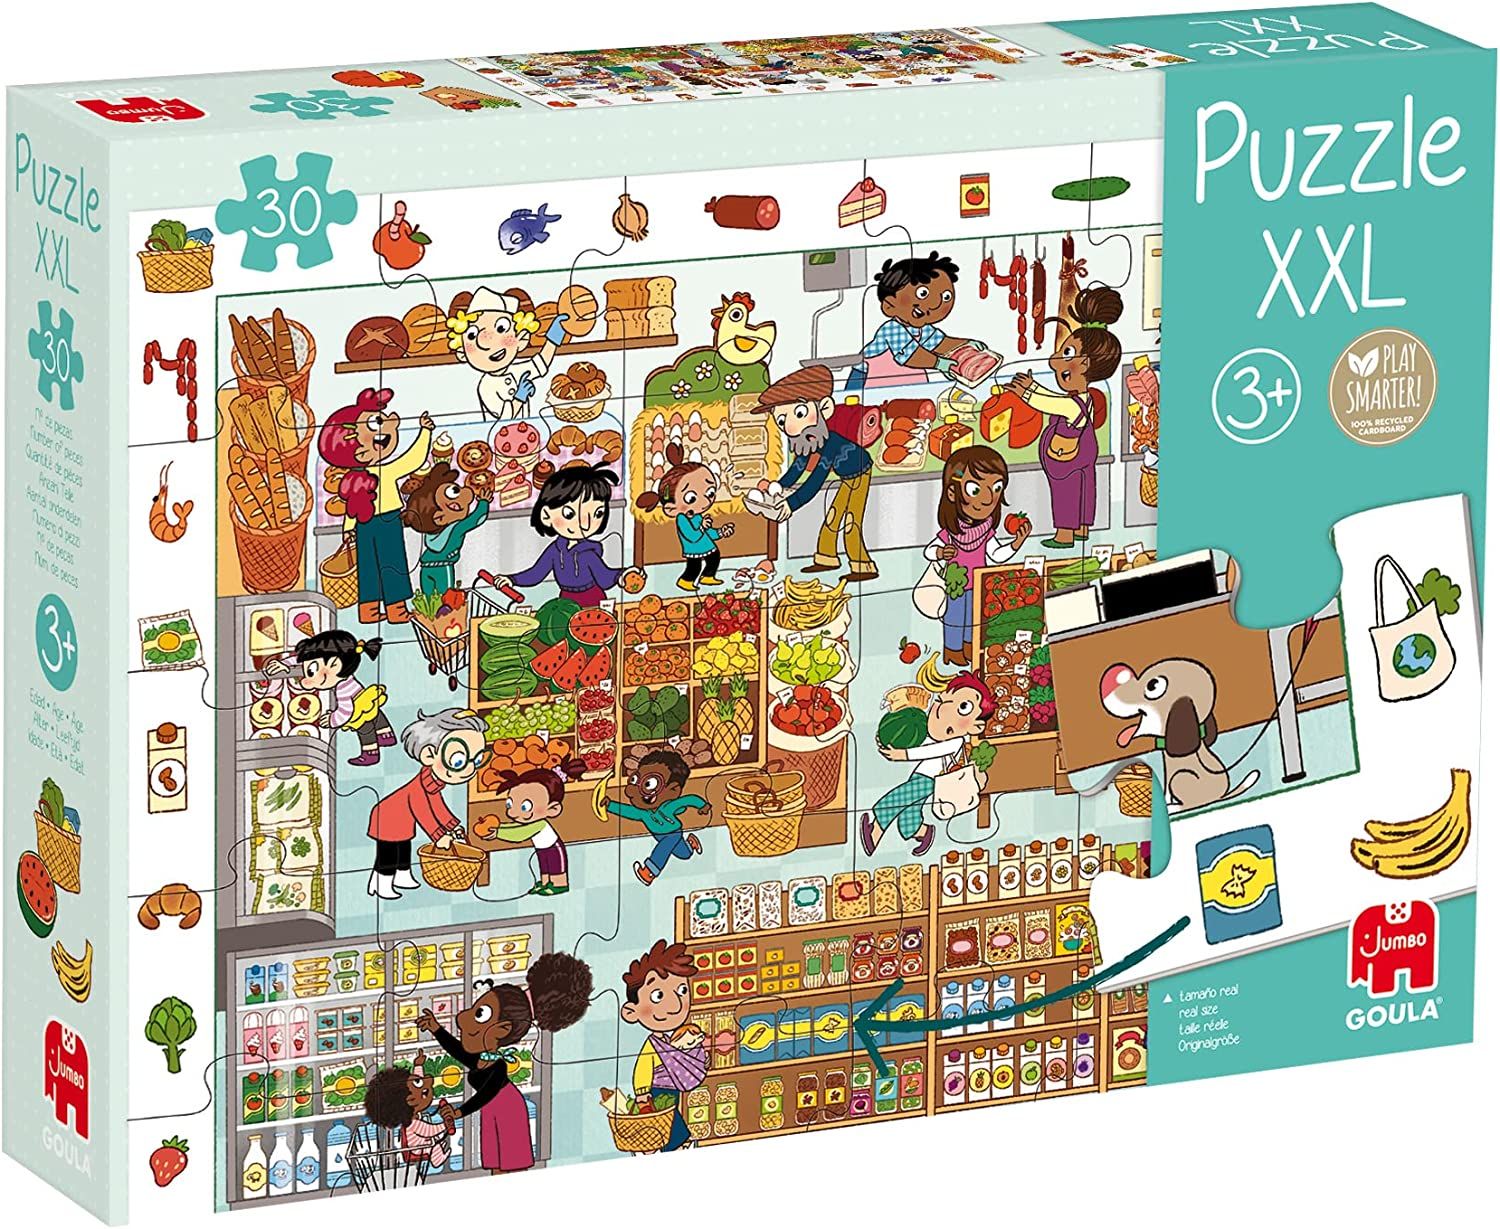 Puzzle XXL Market Goula